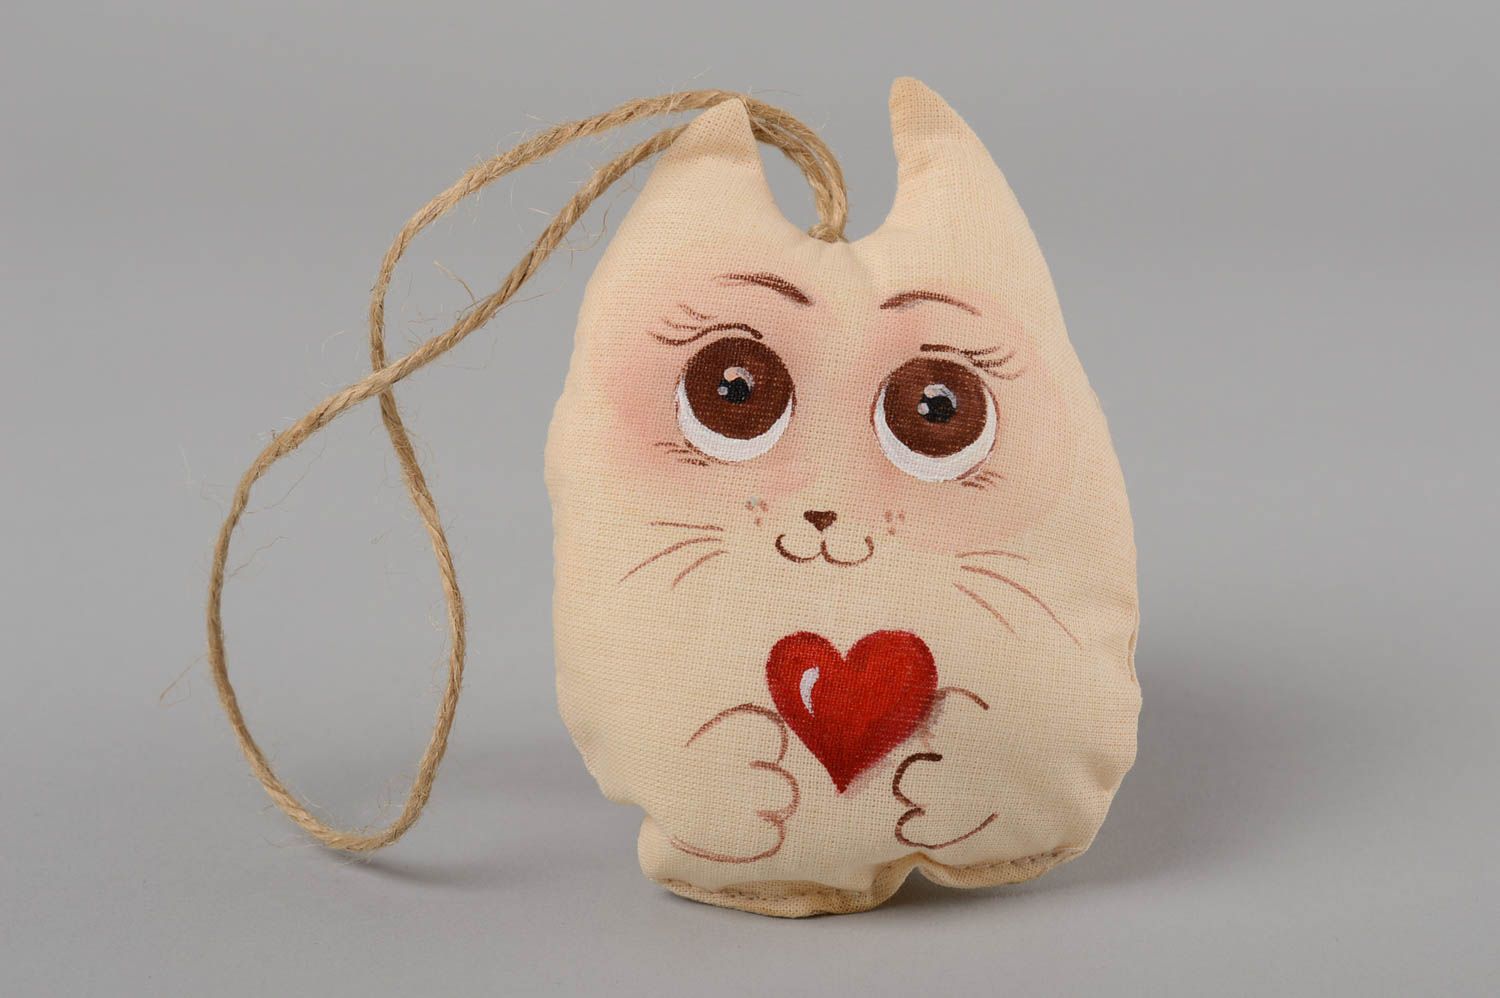 Textil Spielzeug handmade Kuscheltier Katze Deko Anhänger Designer Geschenk  foto 4